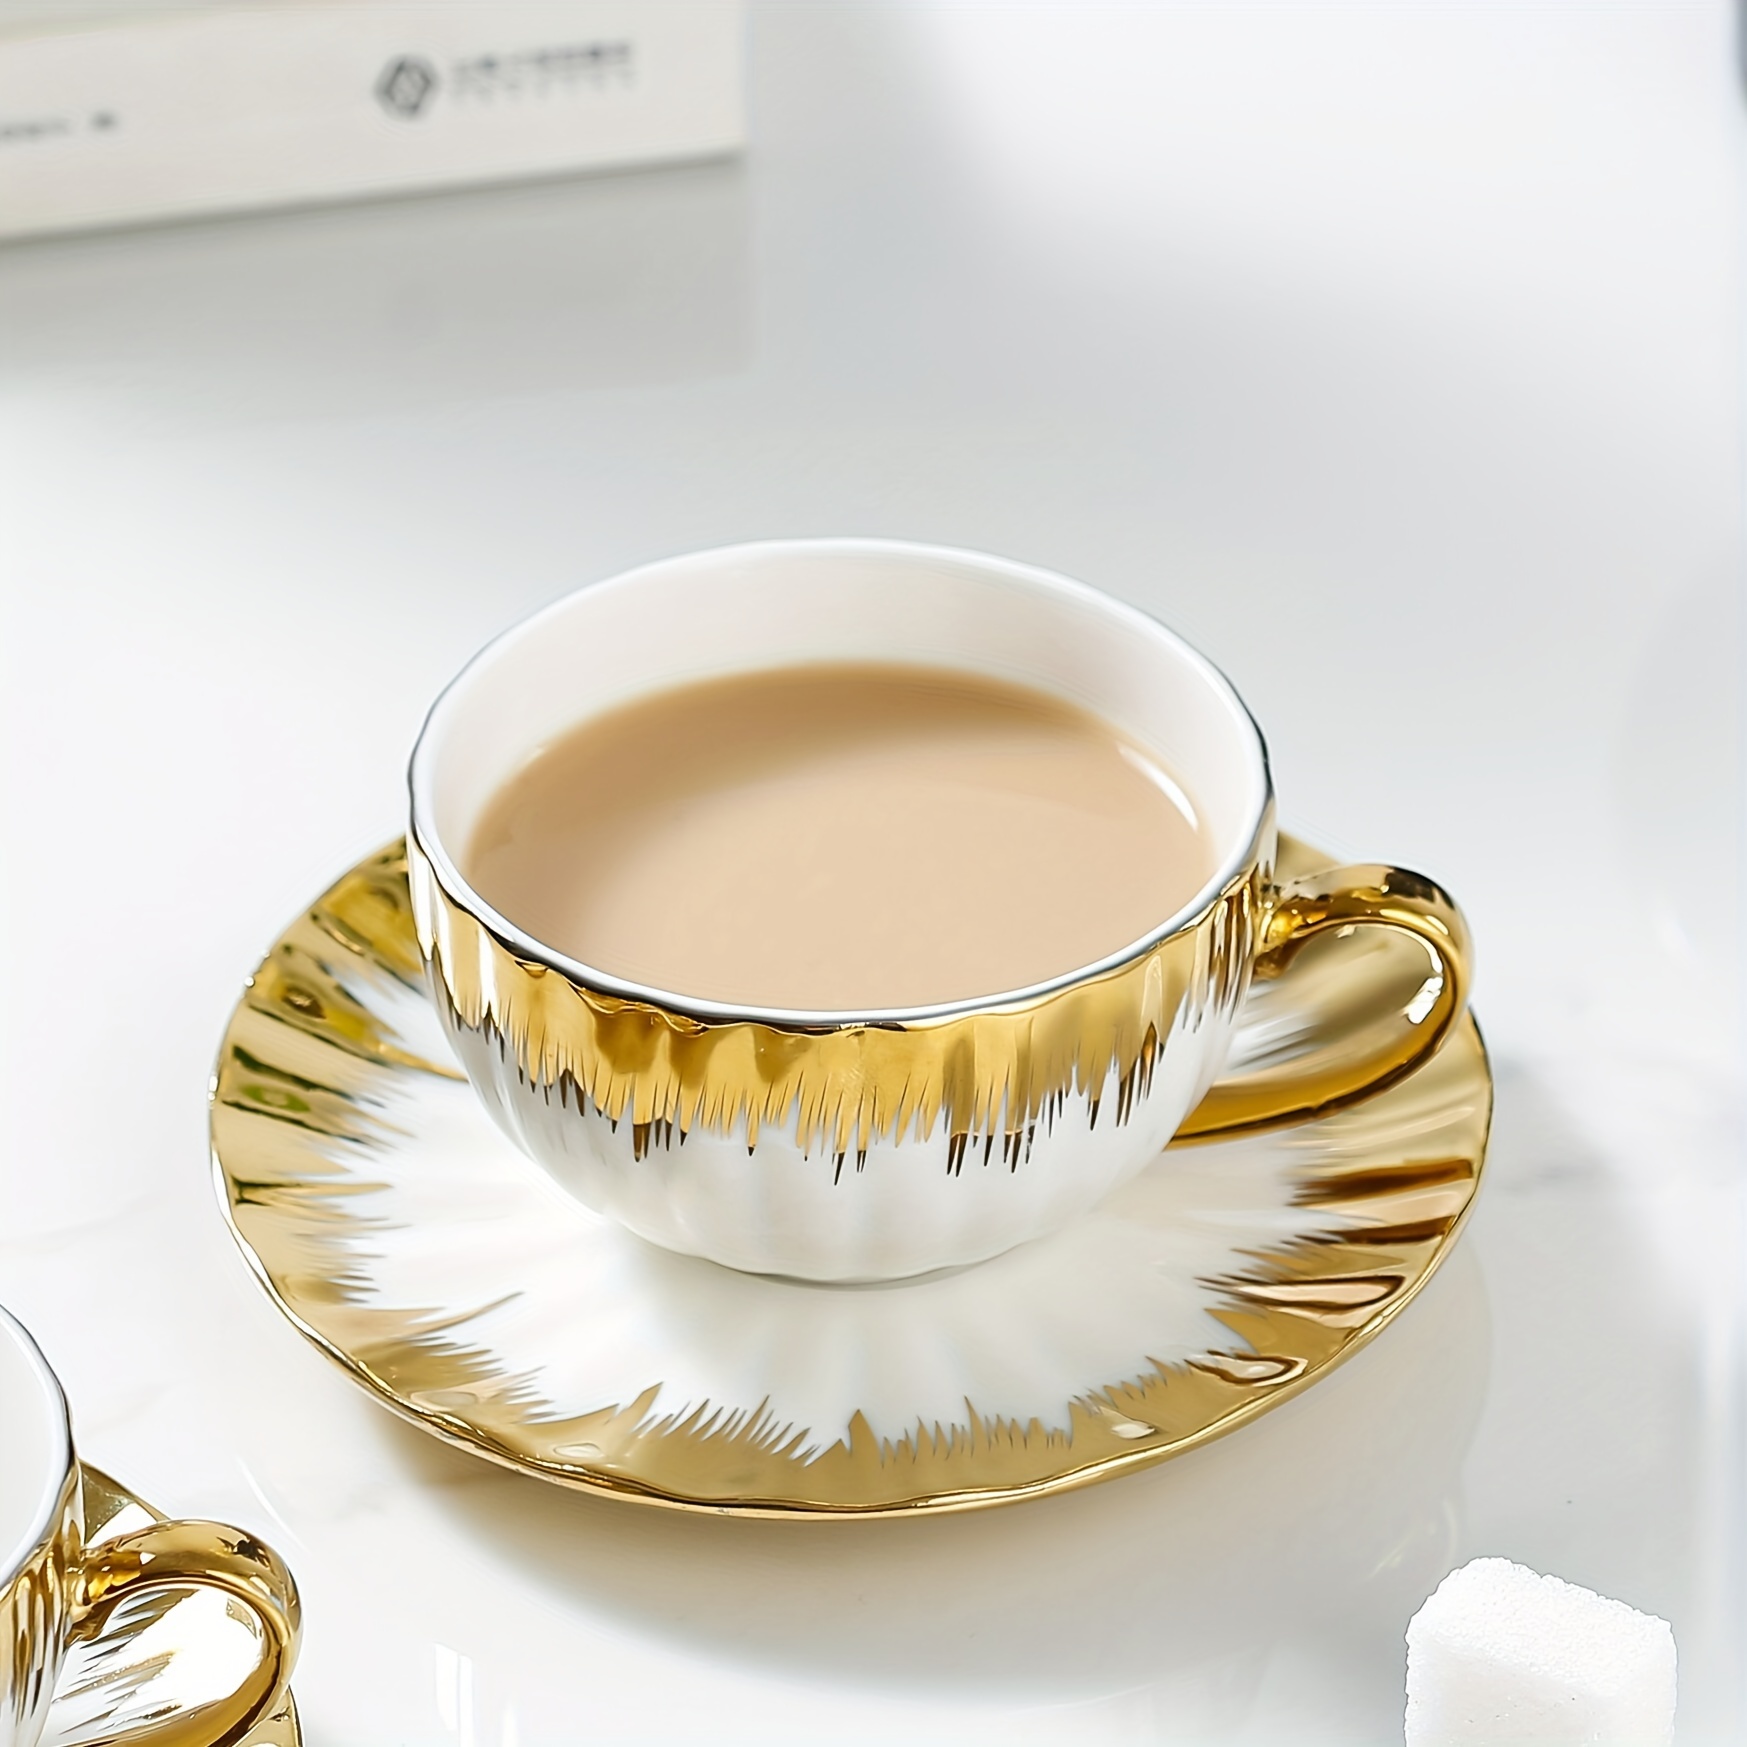 Elegante juego de cafe taza y plato en relieve y reflejos dorados